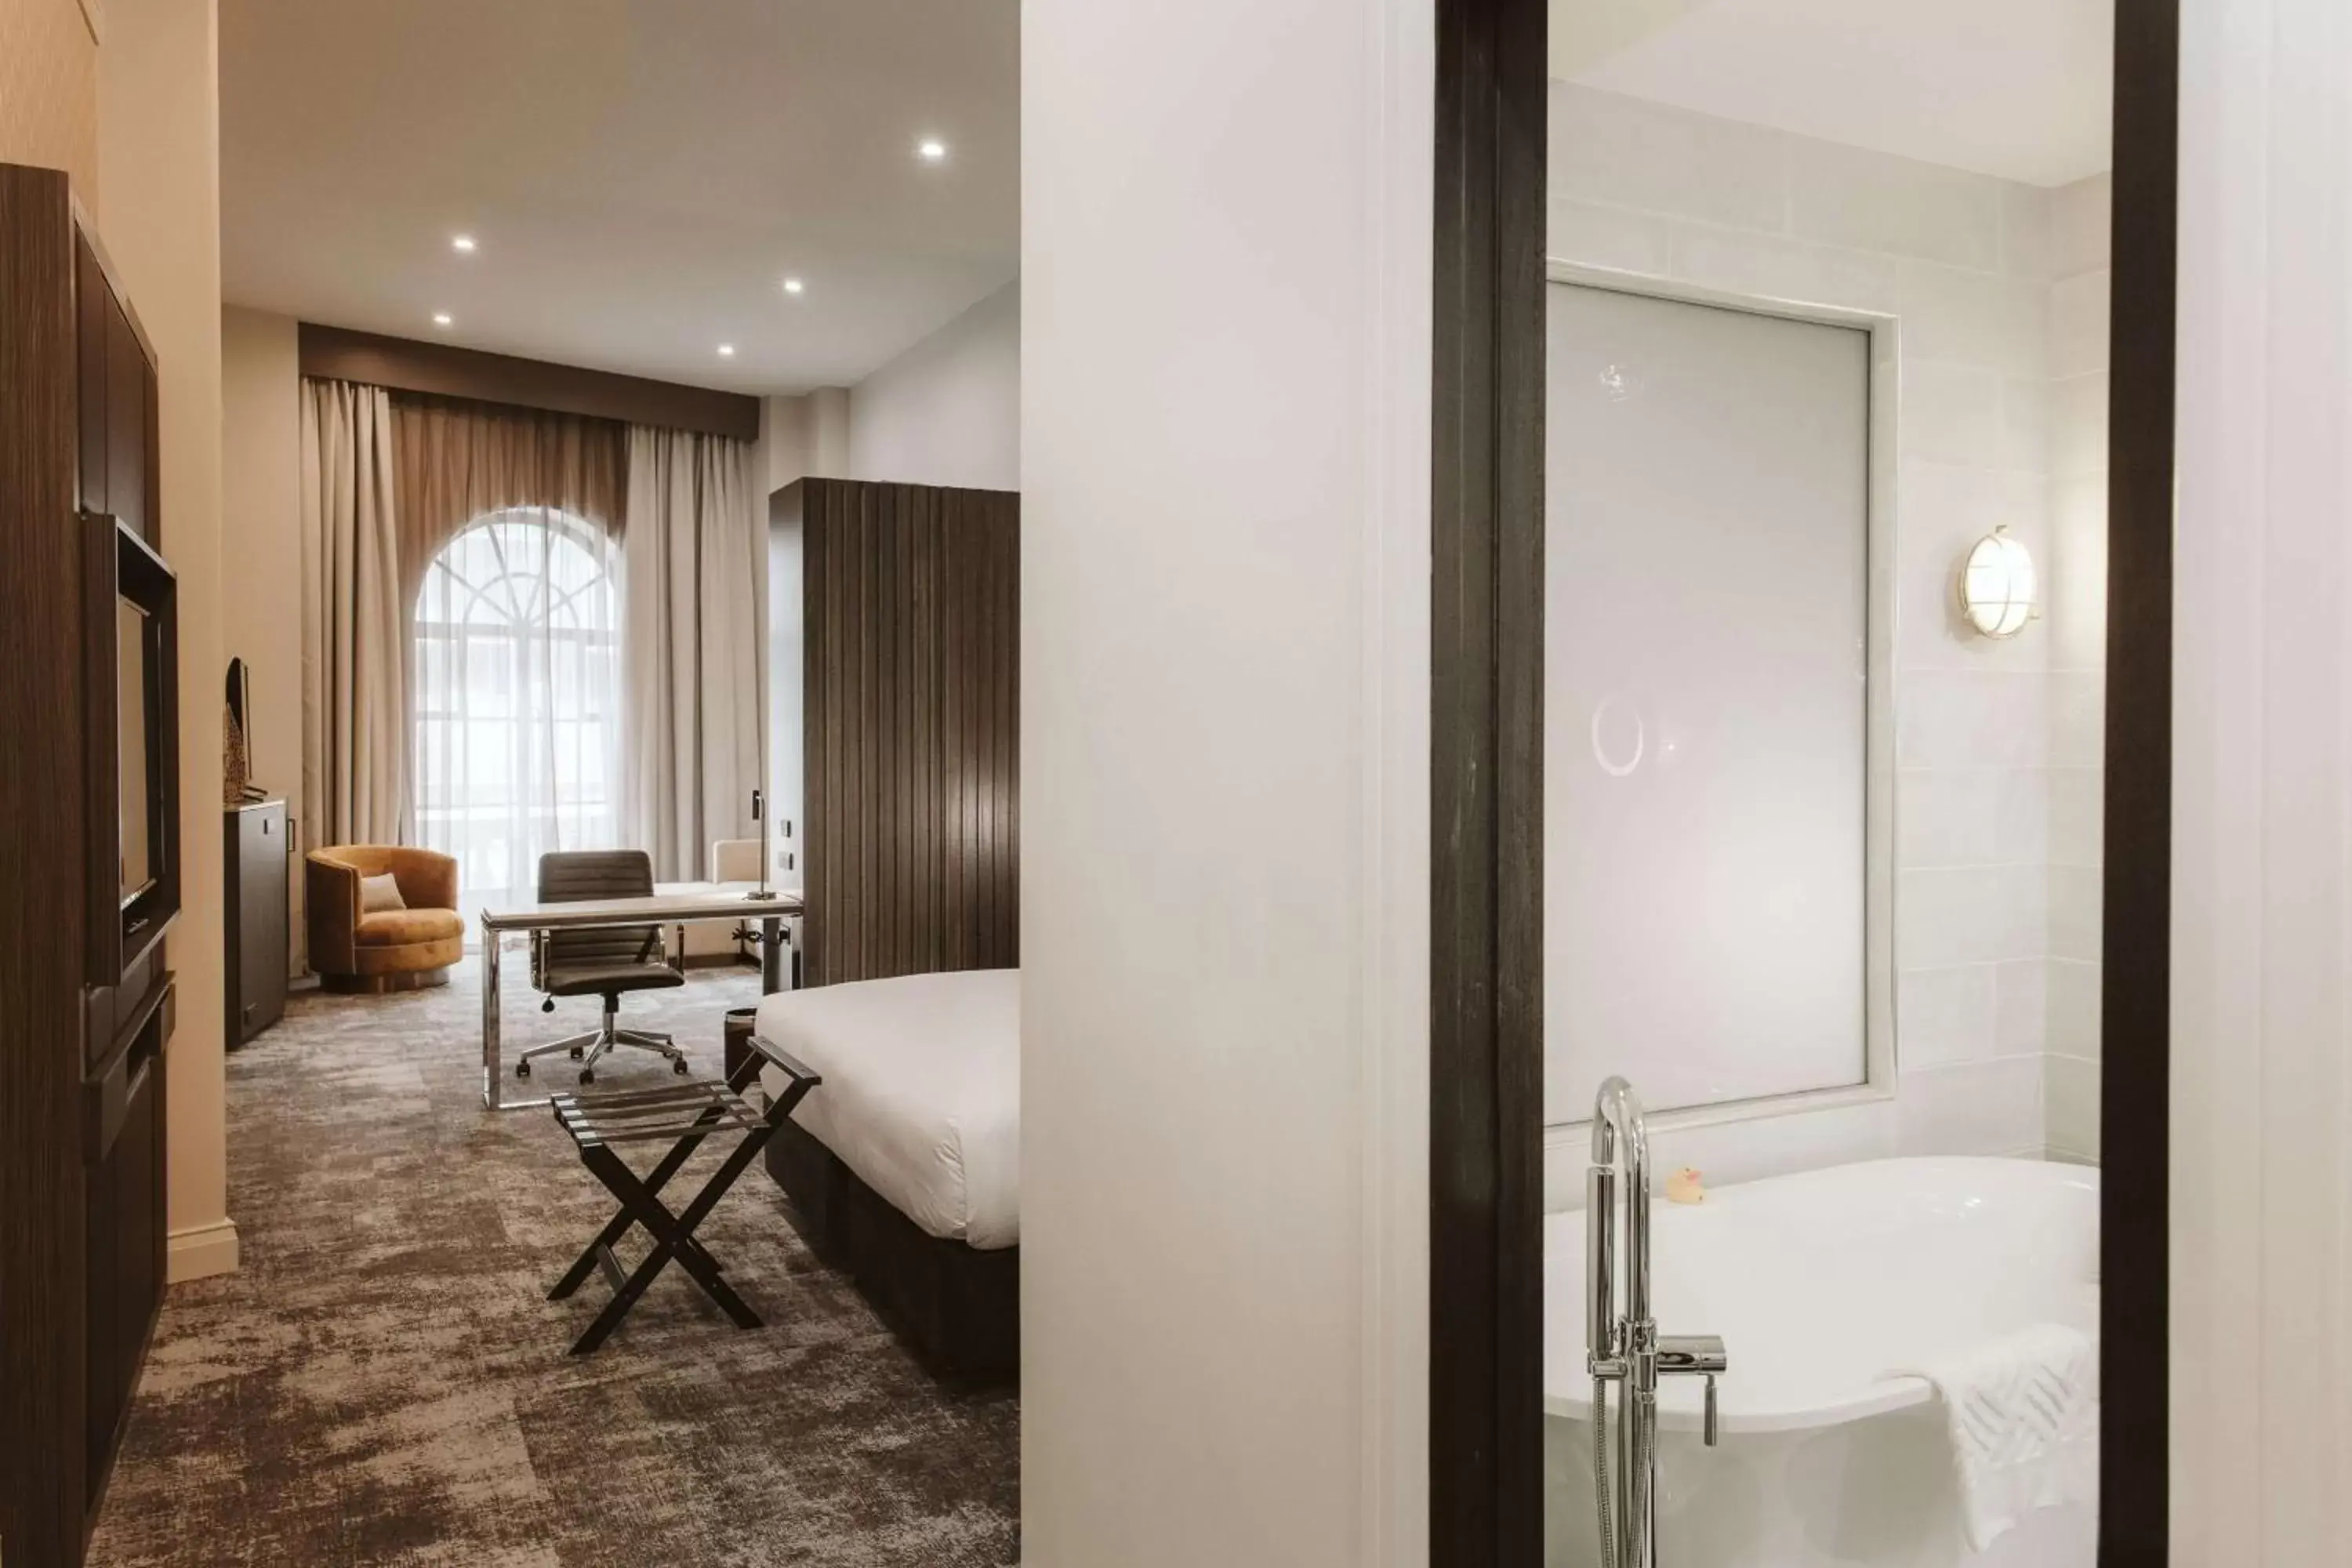 Bedroom, Bathroom in Doubletree By Hilton Wellington